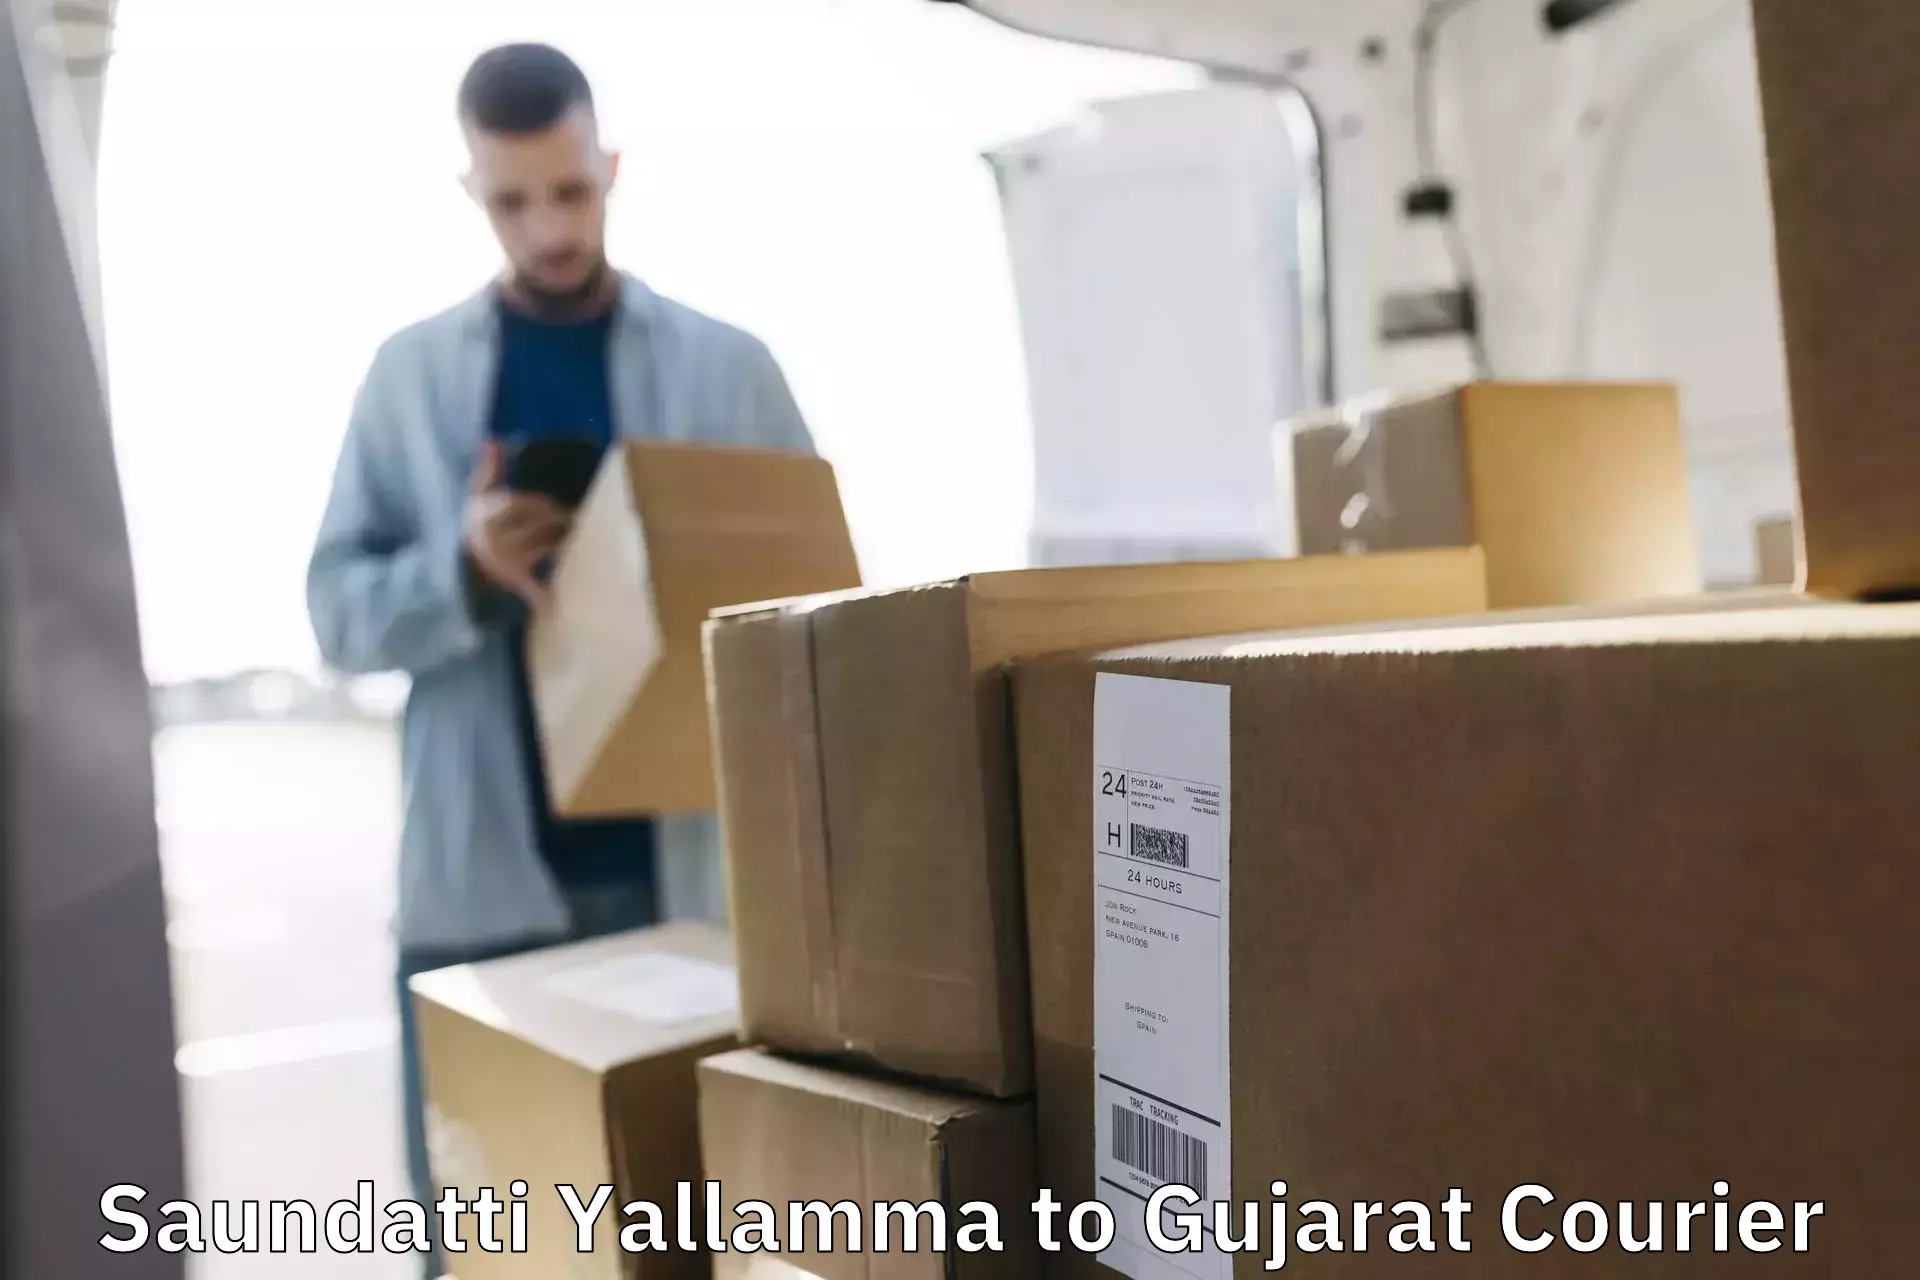 Fragile item shipping in Saundatti Yallamma to Mahemdavad